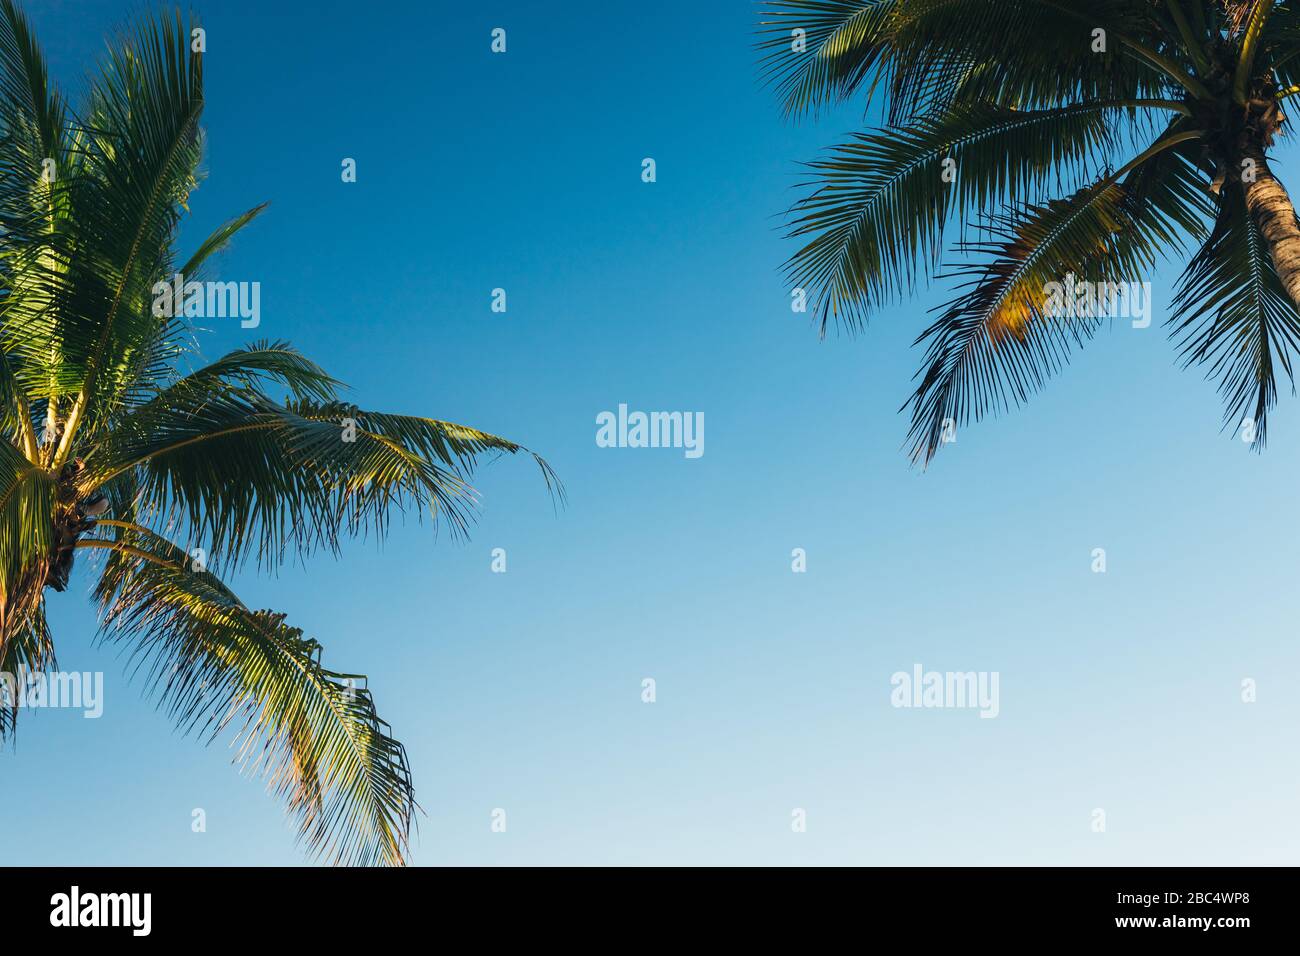 Sfondo tropicale, palme da cocco foglie su uno sfondo di cielo blu chiaro, sfondo estivo, viaggi, natura. Cornice, posiziona per inserire testo o slogan.N Foto Stock